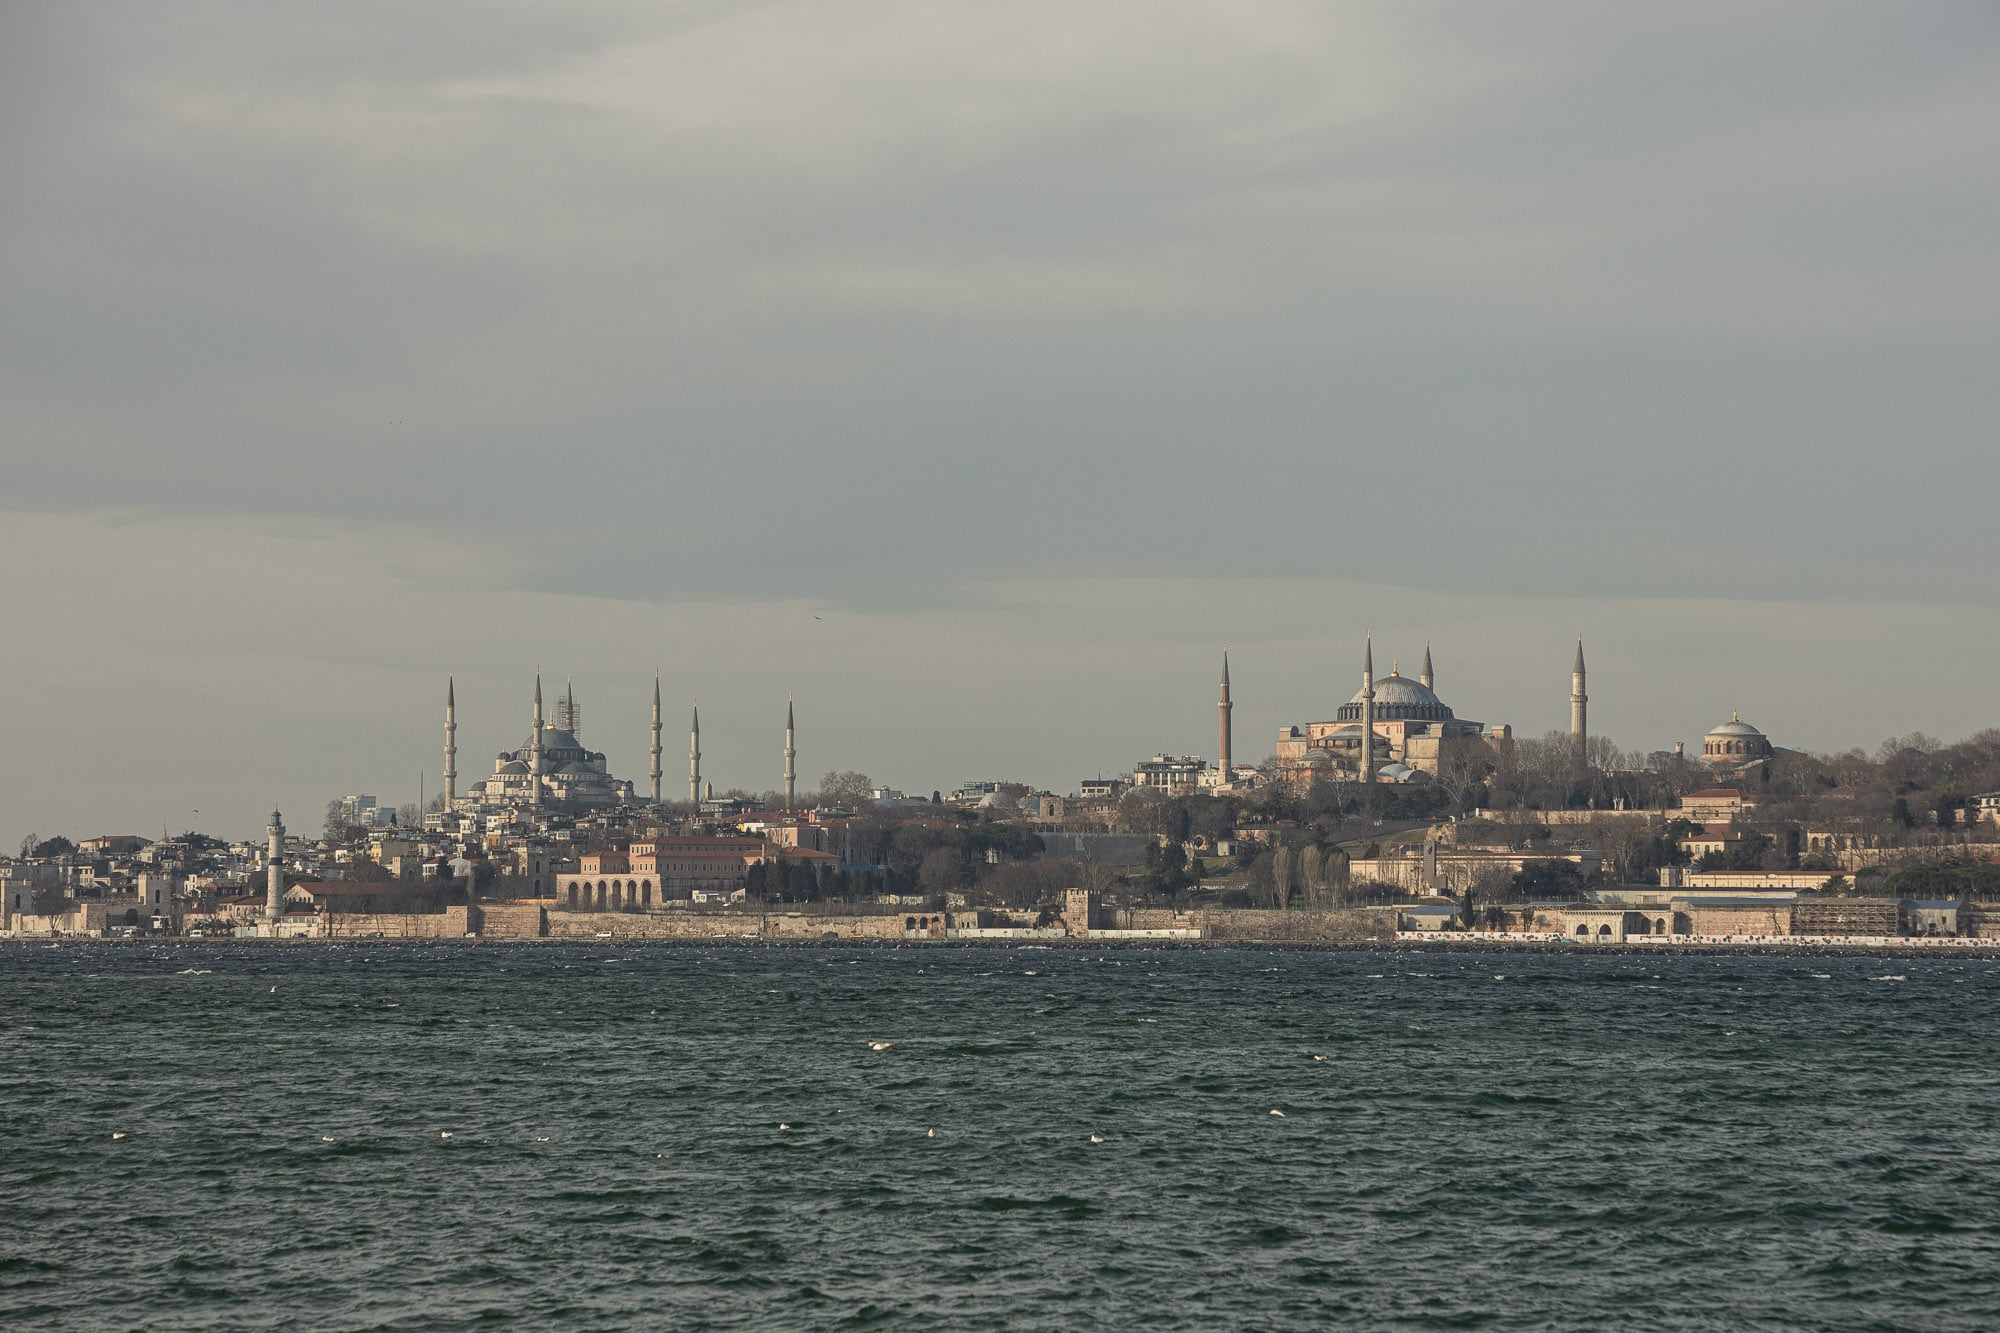 Hagia Sophia from across the Bosphorus